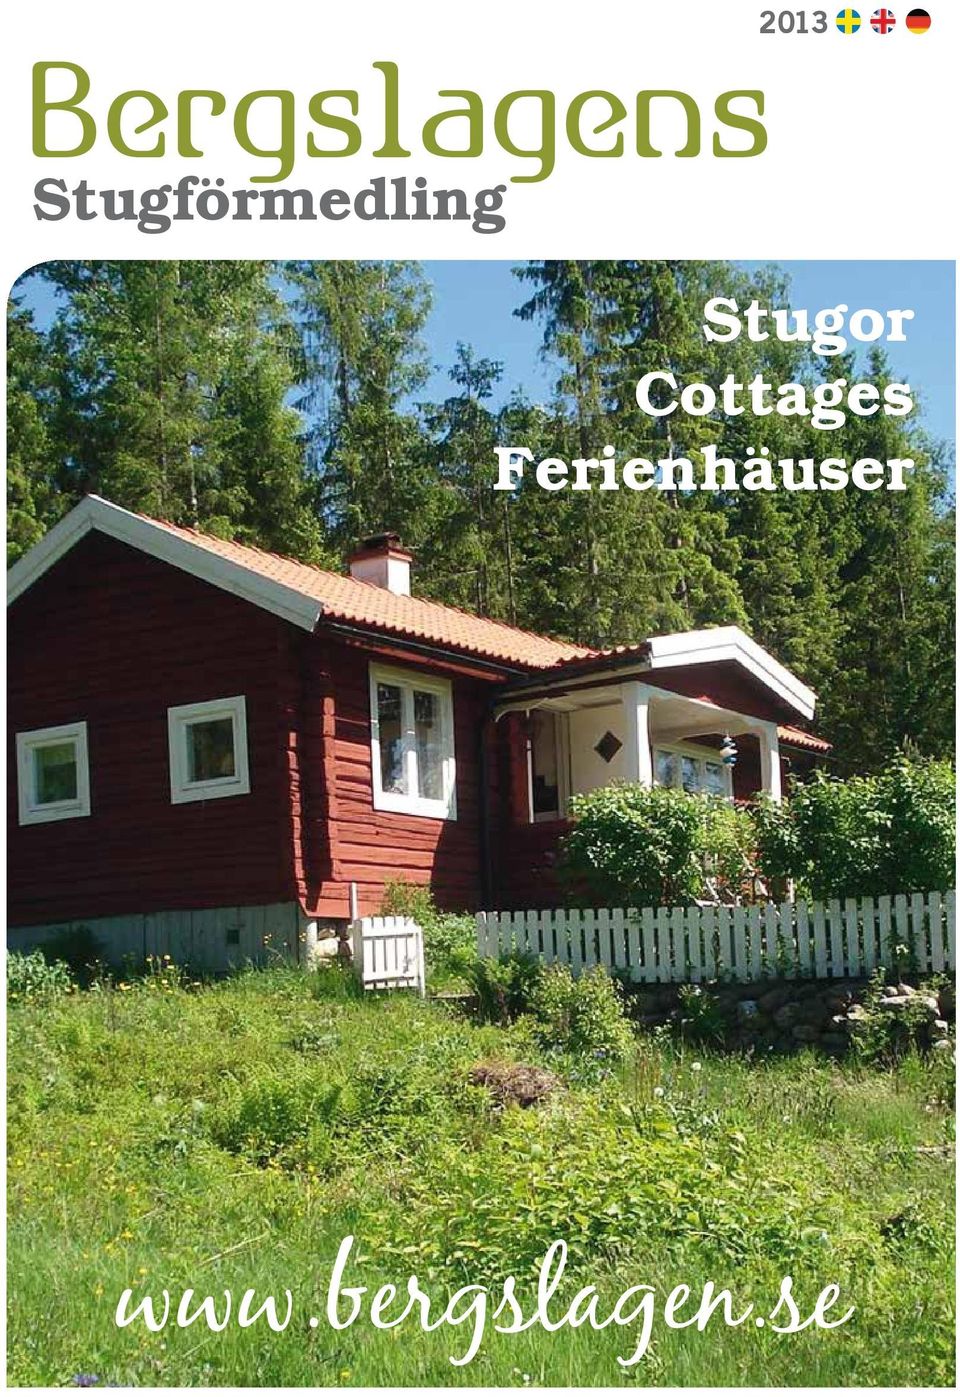 Stugor Cottages